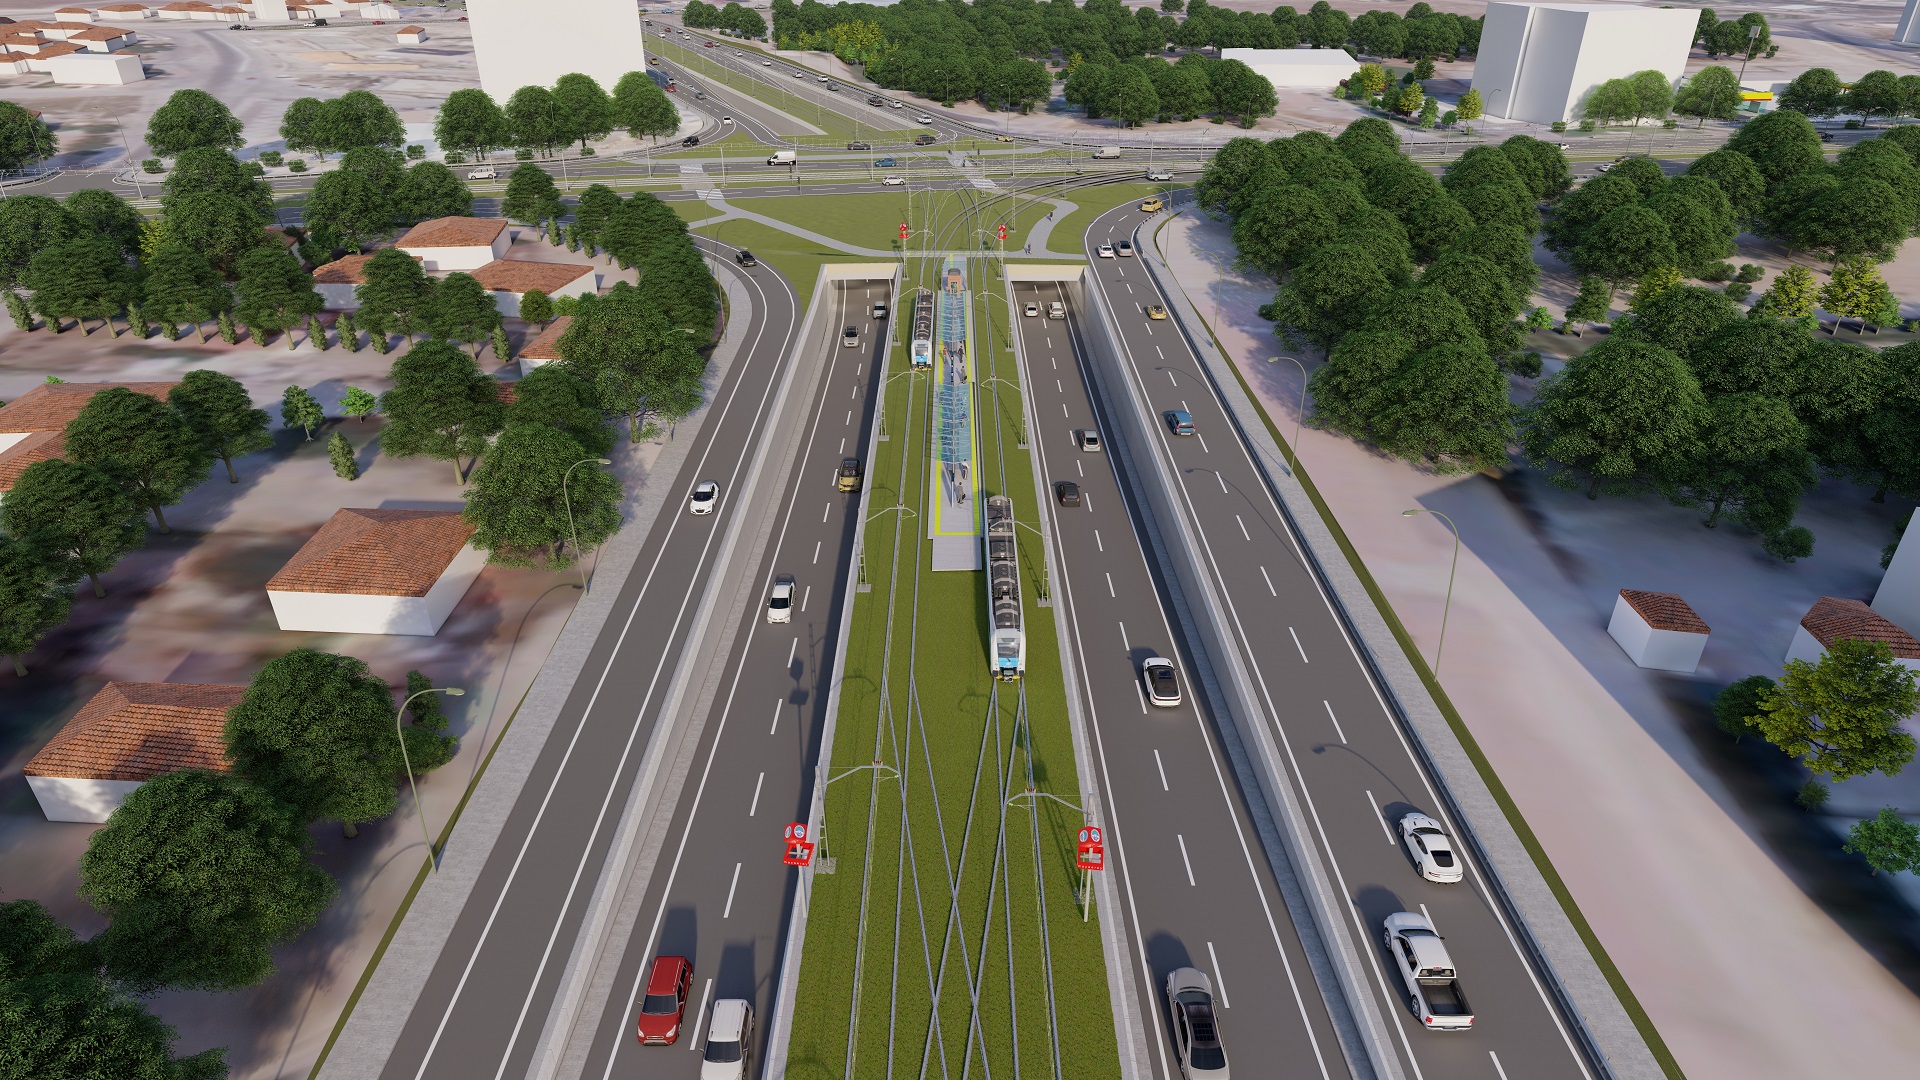 300 Milyon TL'lik Projeye 6 Yeni Tramvay Aracı Alınacak